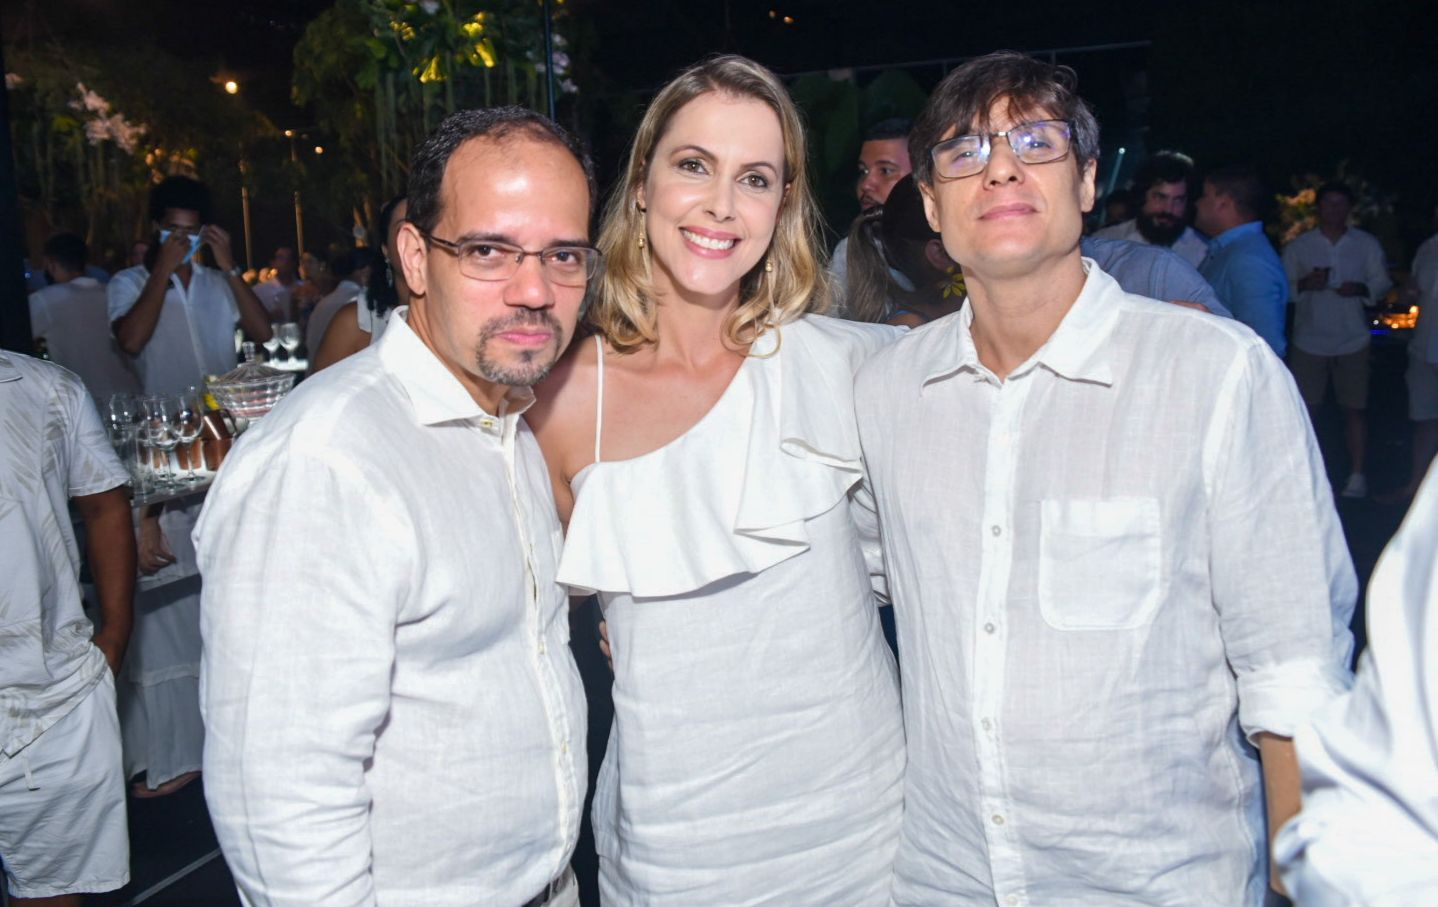  Eduardo Pedreira, Bárbara Folkerts e Thiago Bahia       